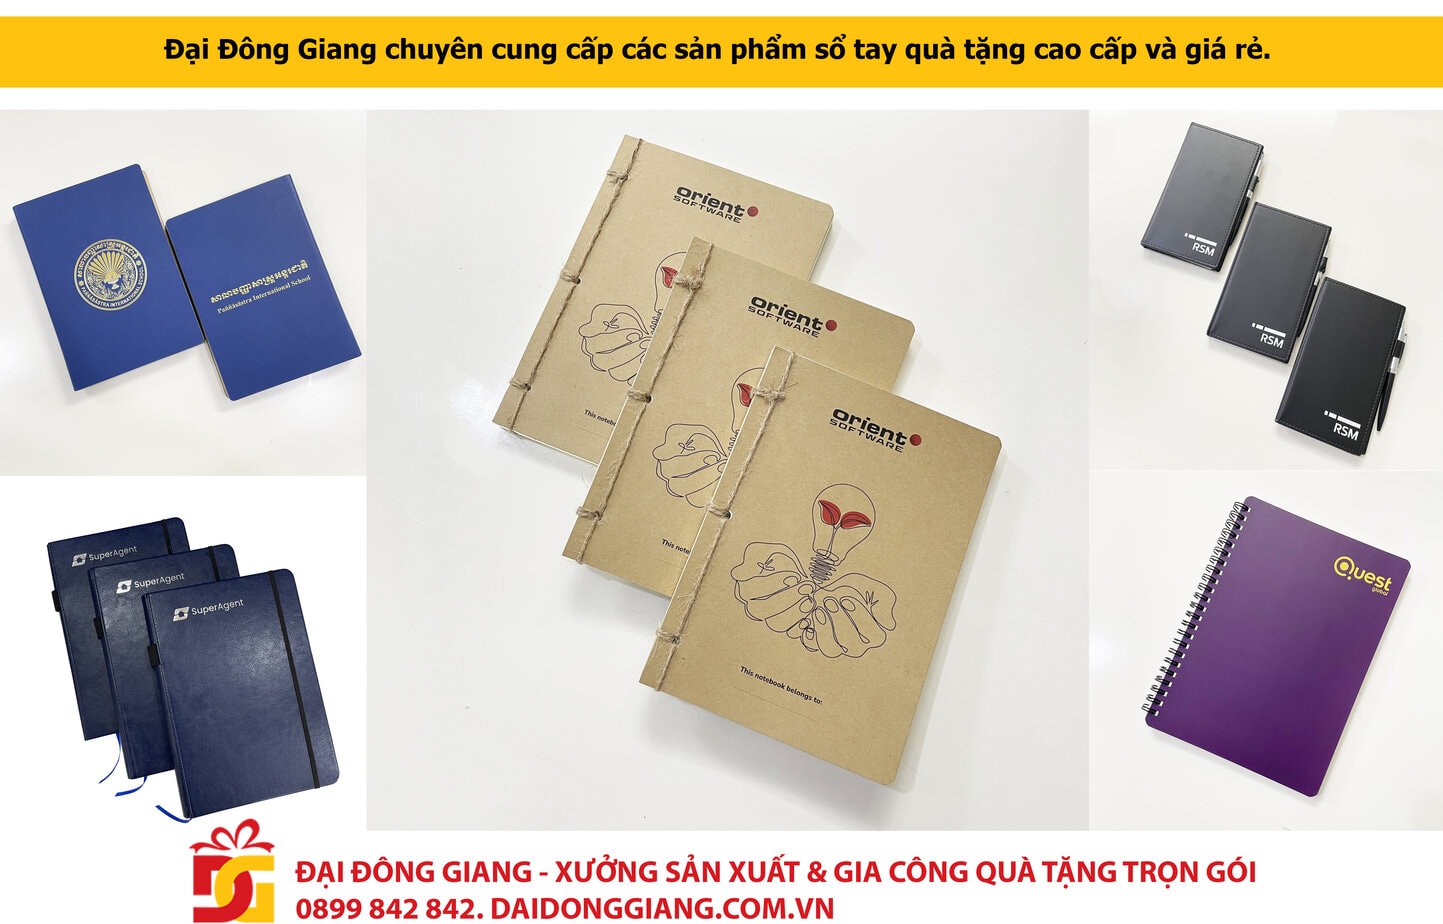 Đại Đông Giang chuyên cung cấp các sản phẩm sổ tay quà tặng cao cấp và giá rẻ.